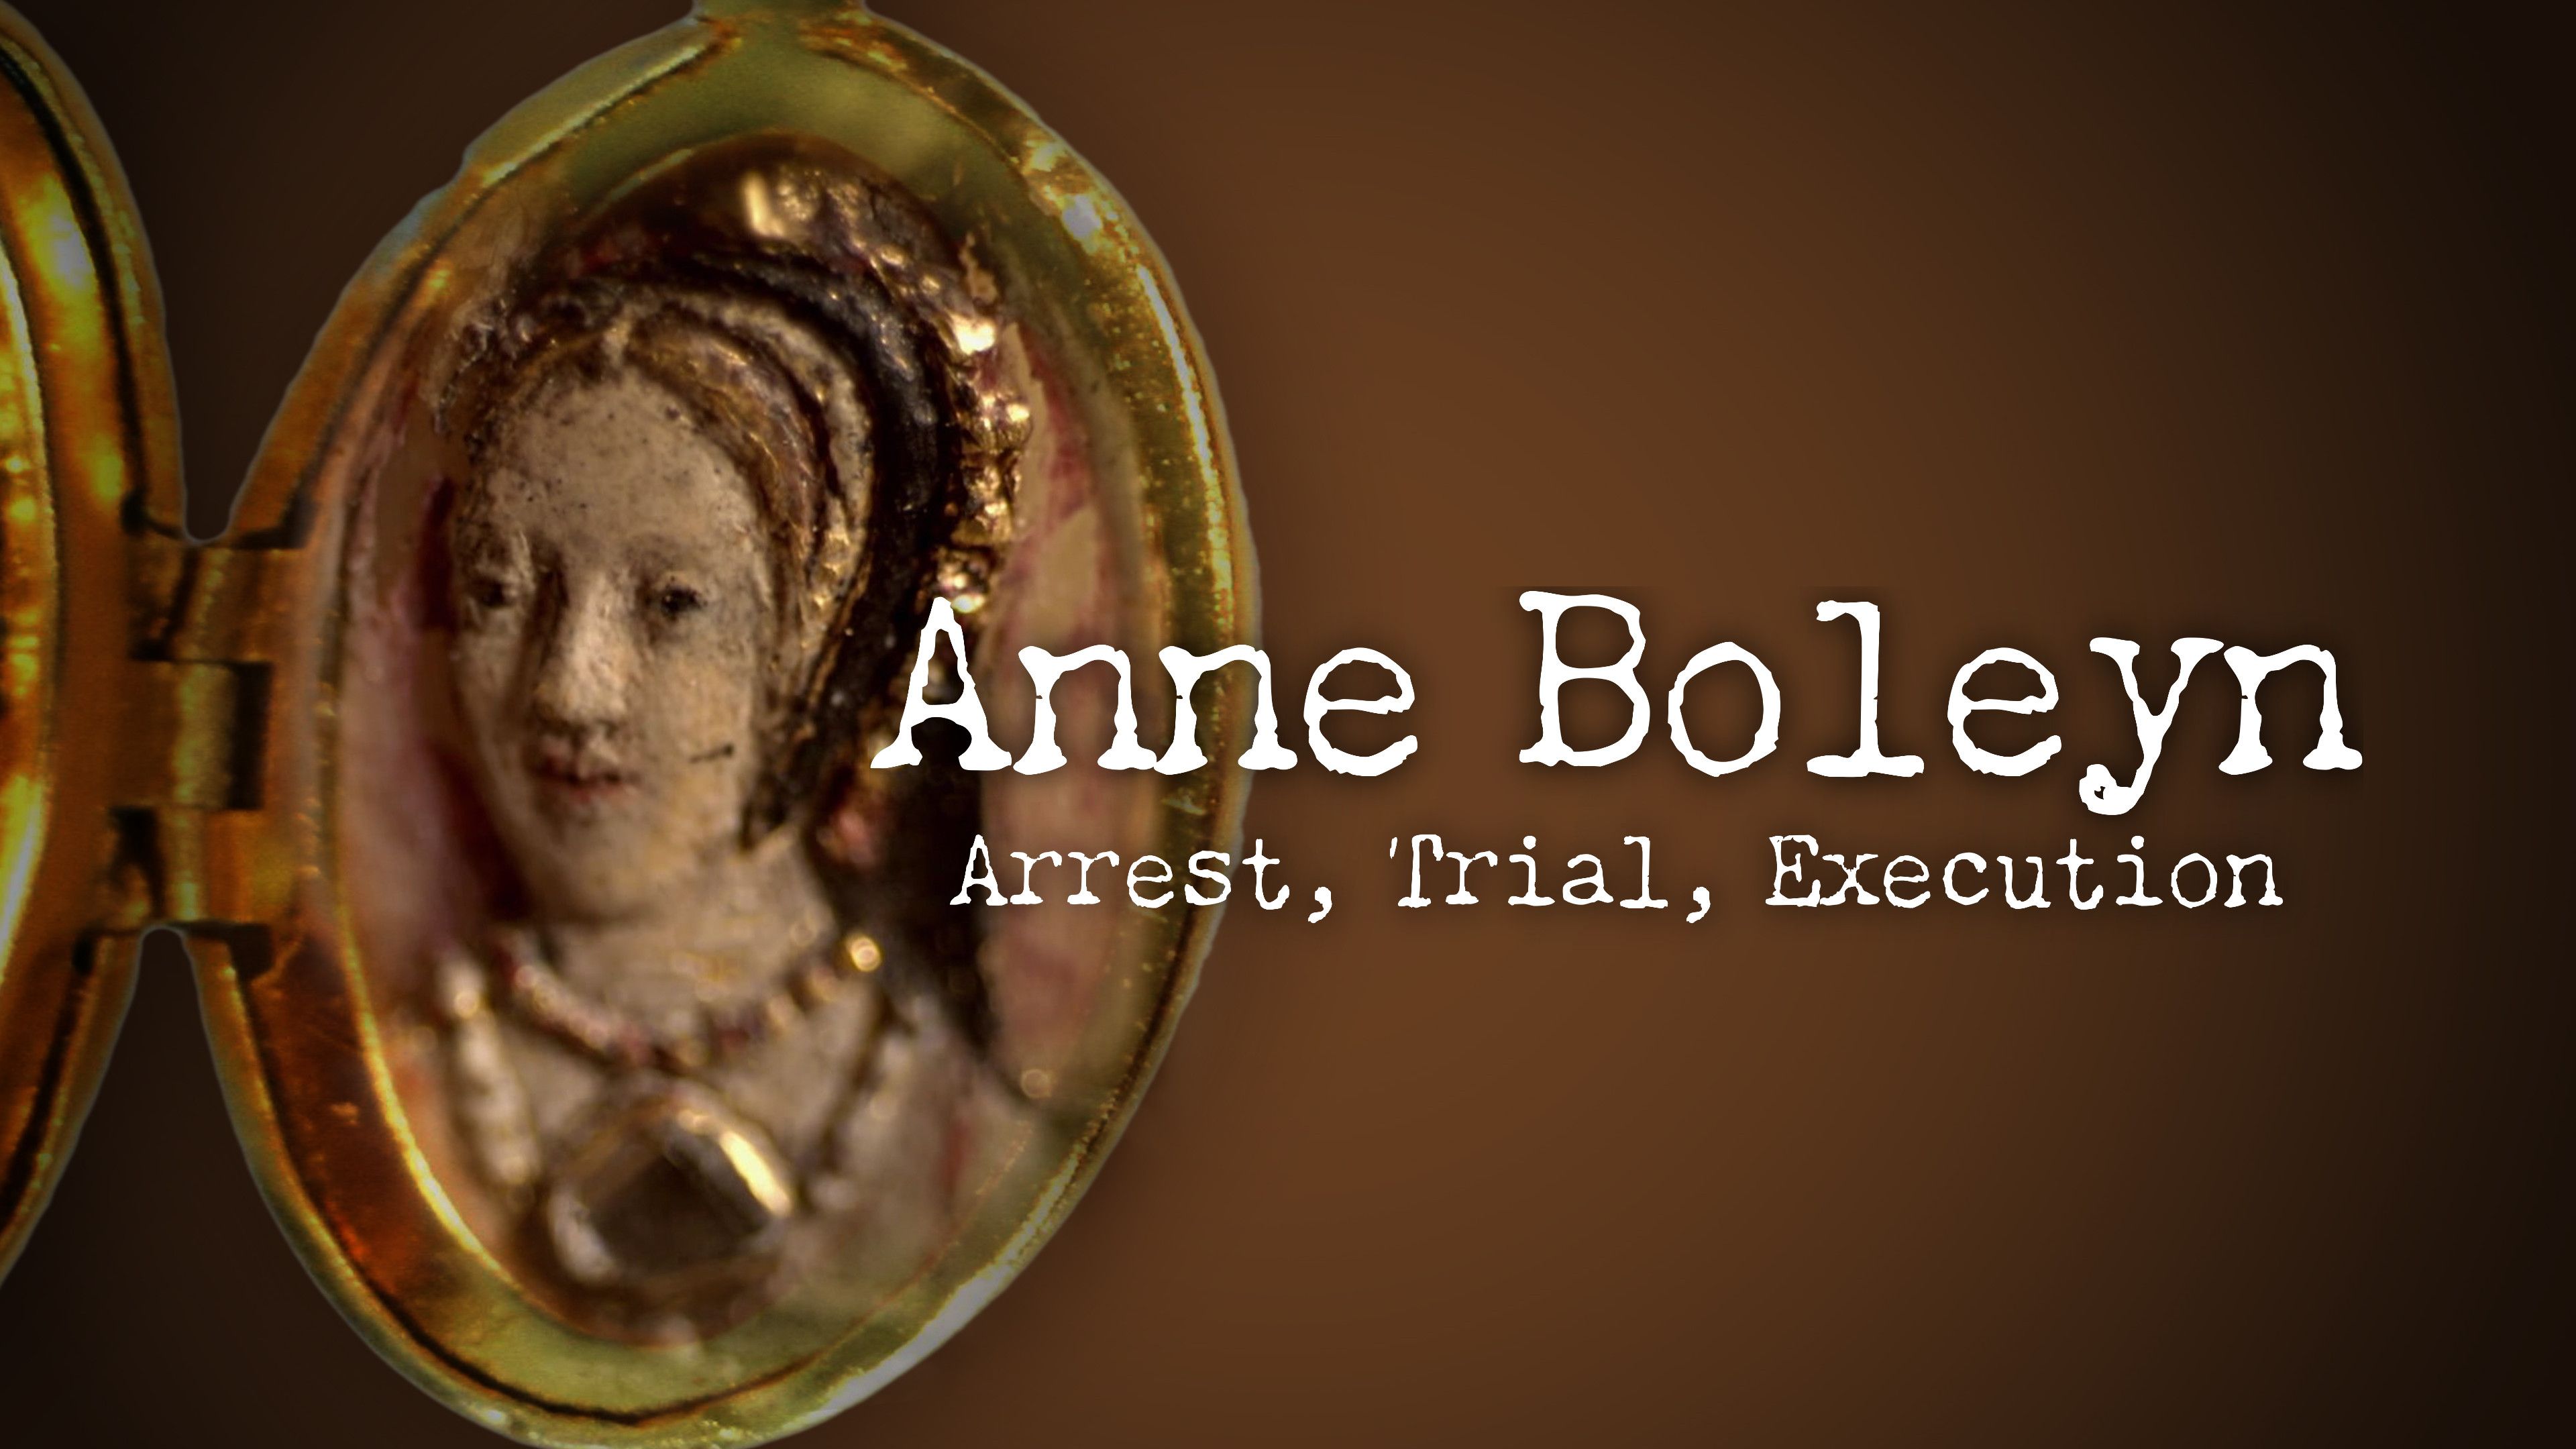 Anne Boleyn: Arrest, Trial, Execution